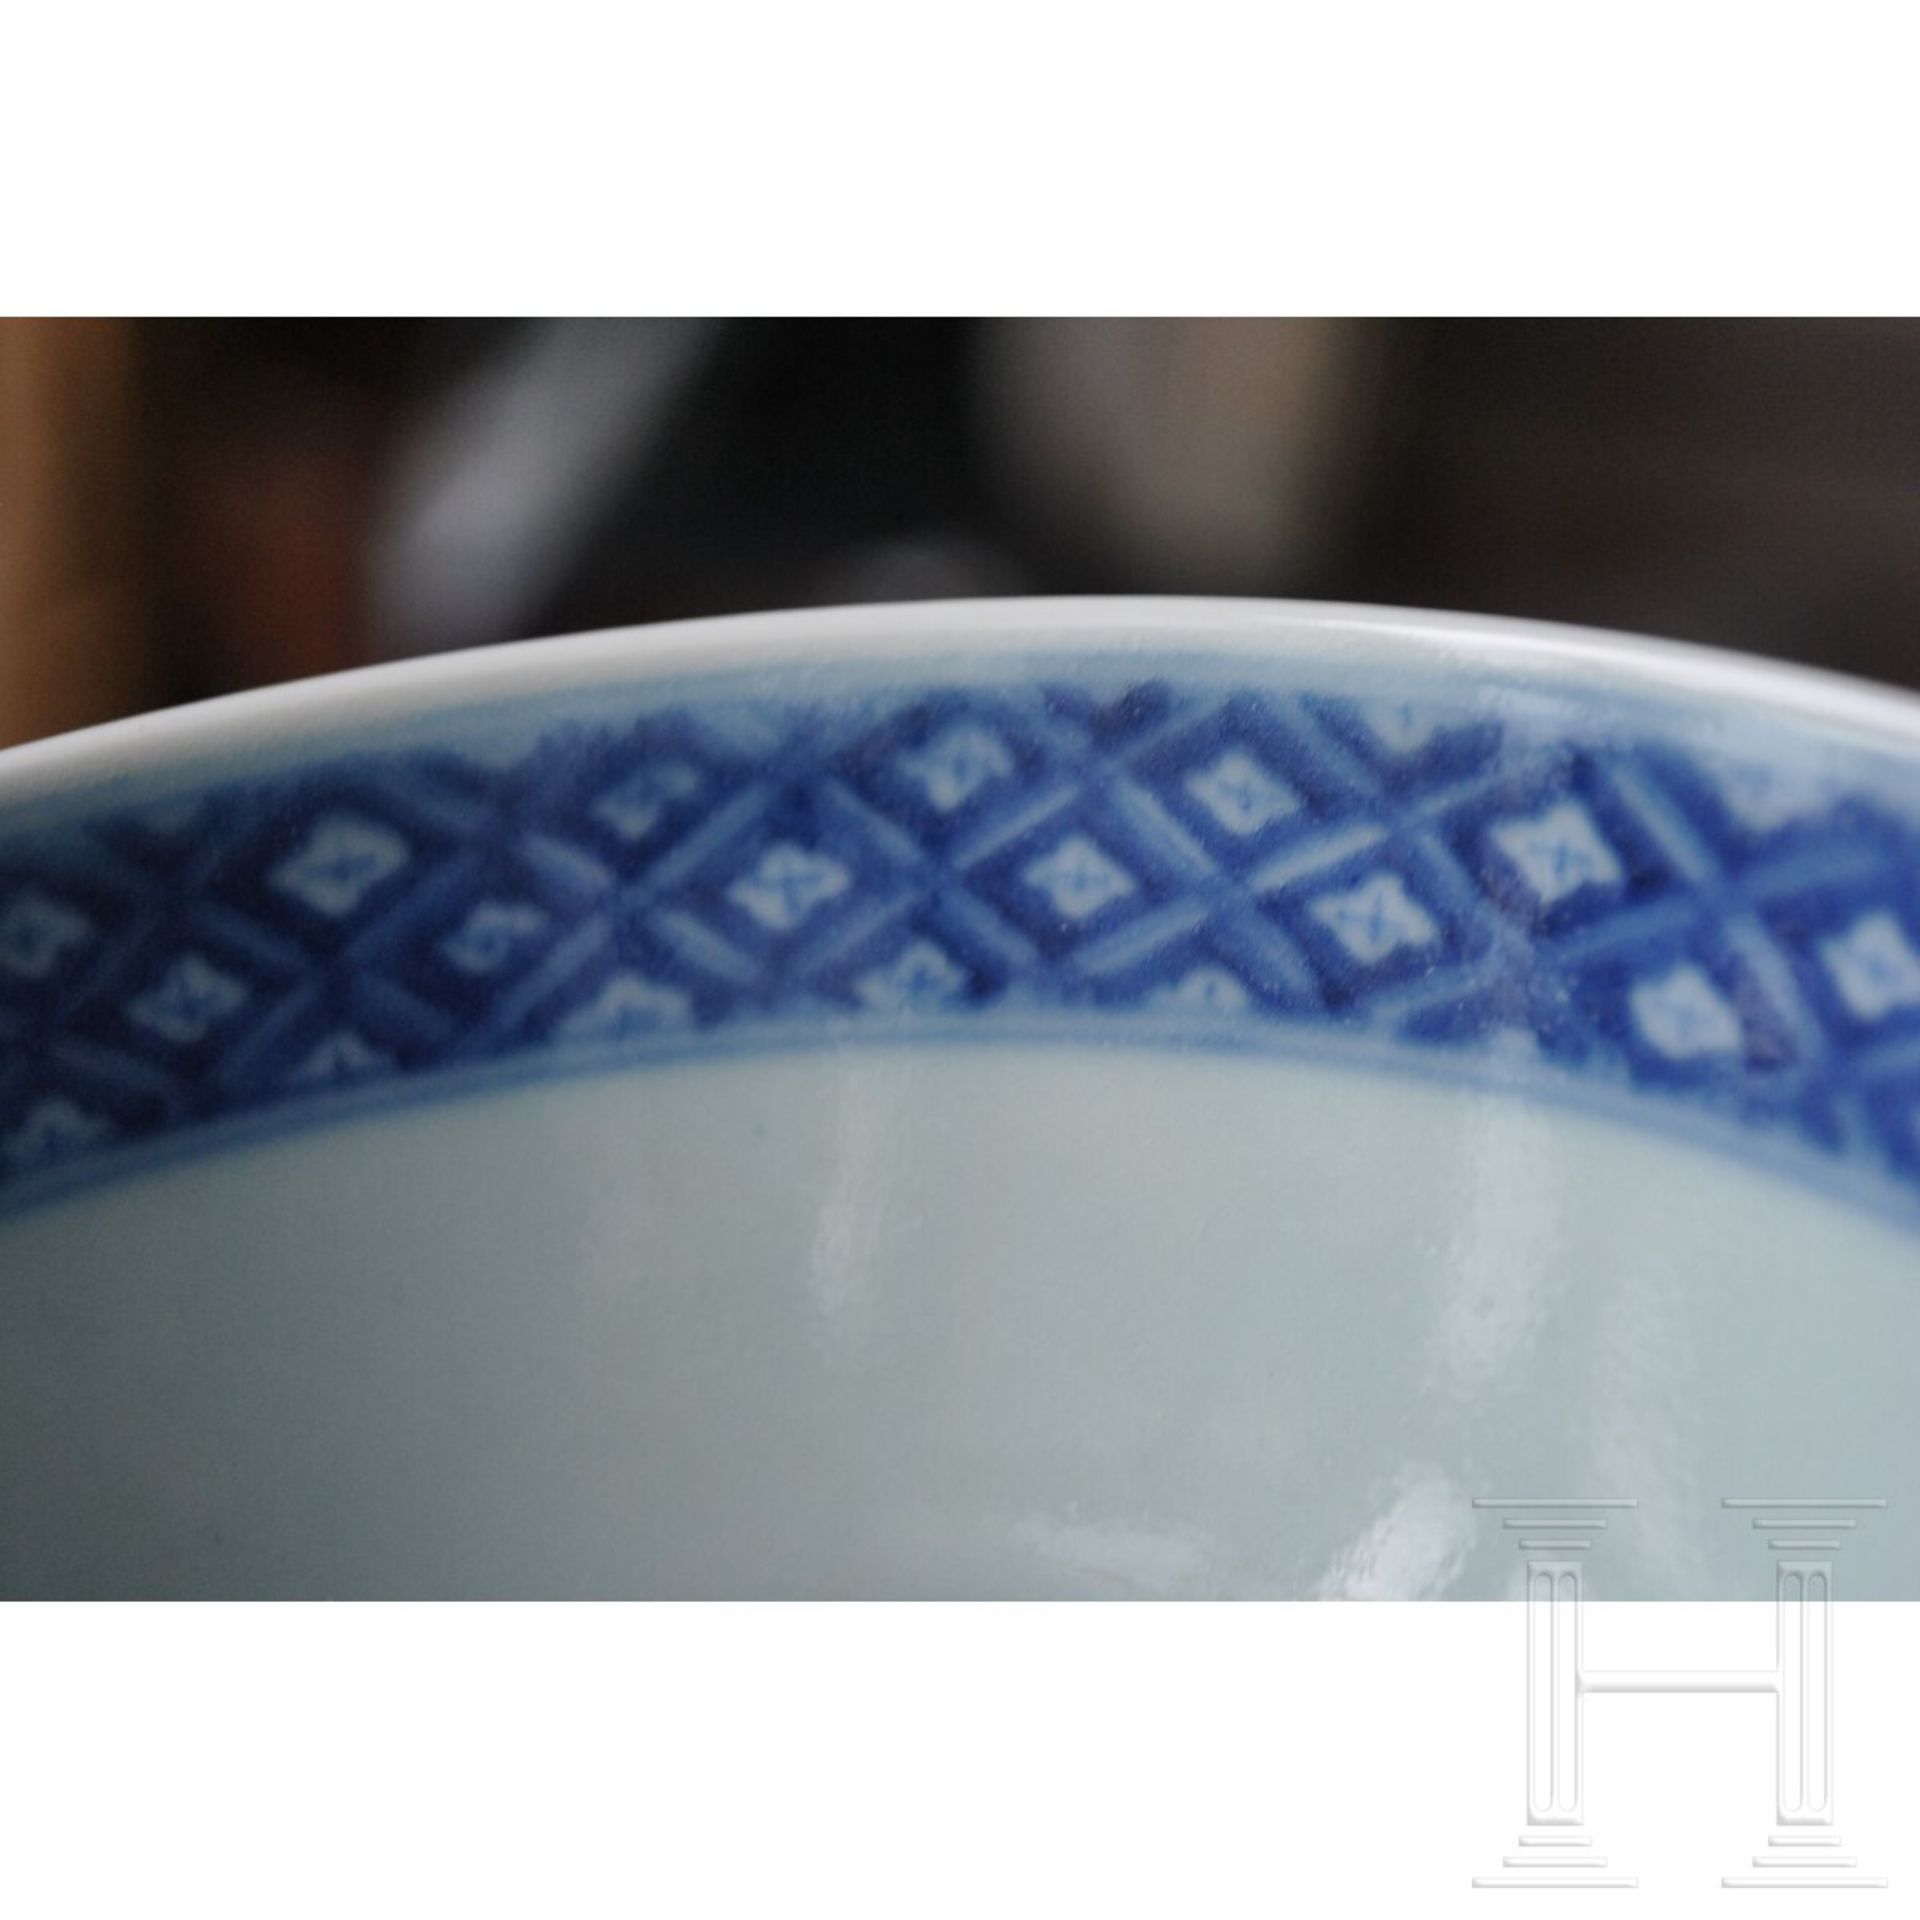 Blau-weiße Kranich- und Dreibalken-Schale mit Guangxu-Marke, 19. - frühes 20. Jhdt. - Bild 15 aus 19